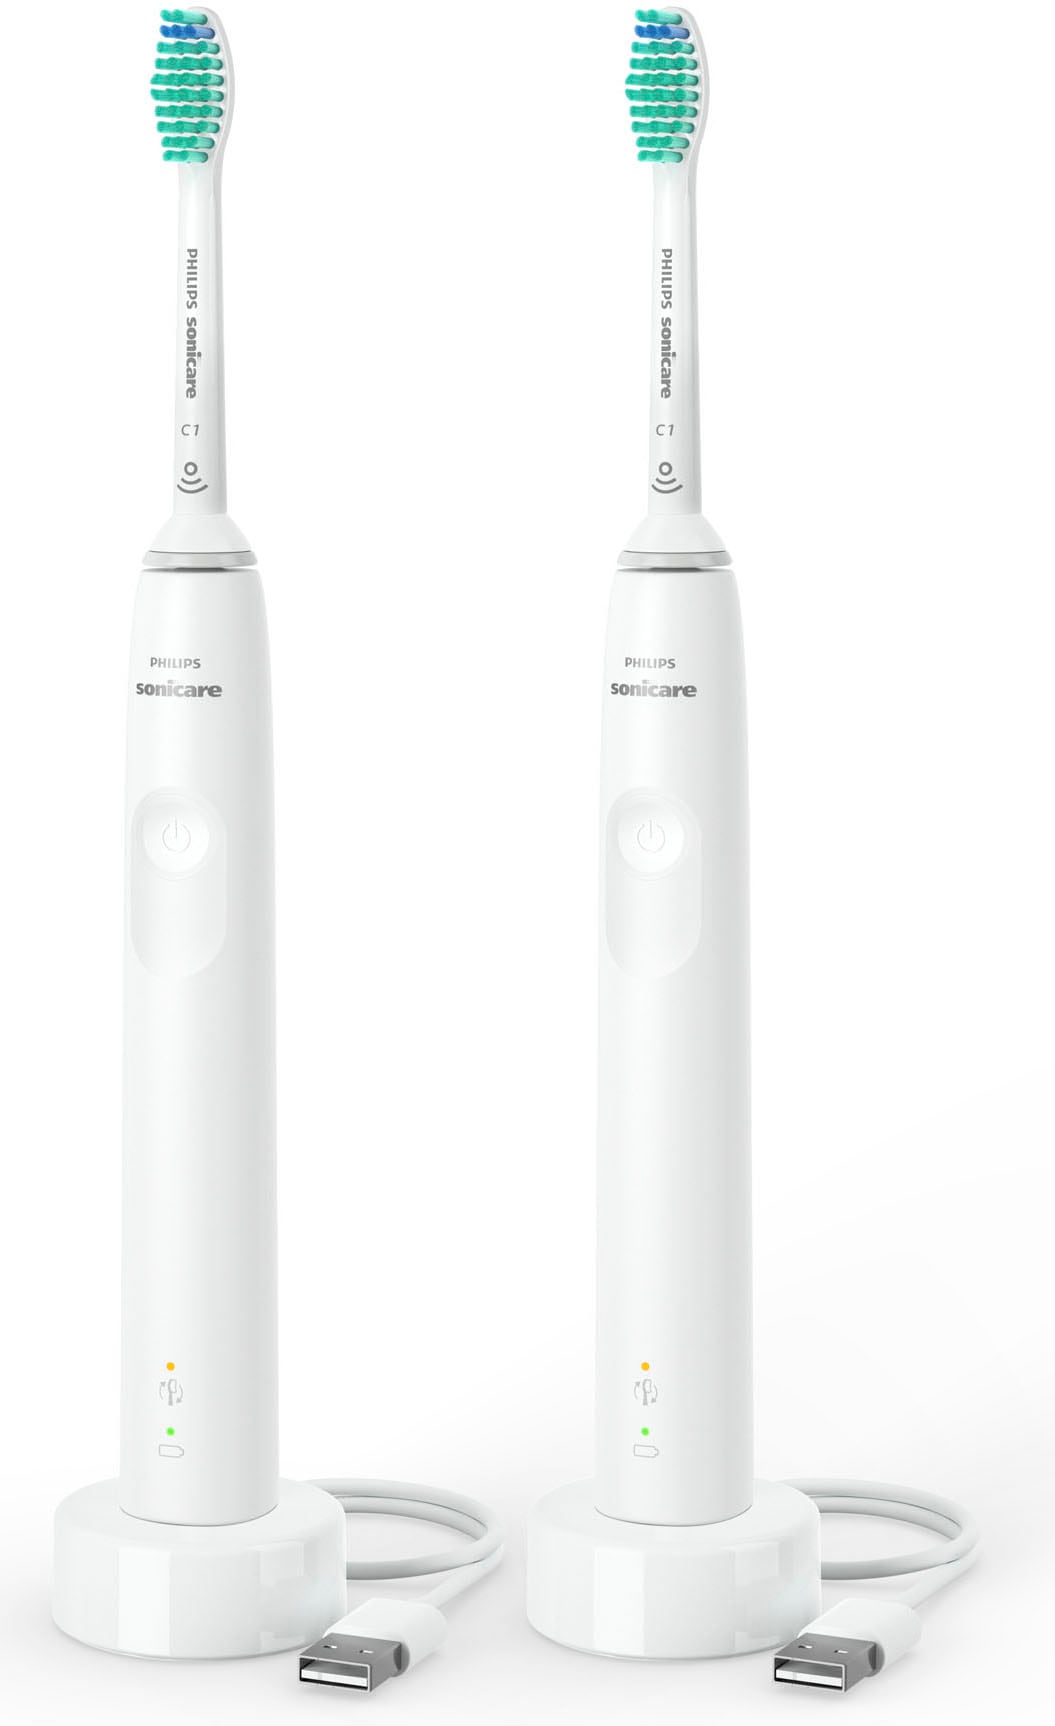 Philips Sonicare Elektrische Zahnbürste »Series 3100 HX3675/13«, 2 St. Aufsteckbürsten, Doppelpack, mit 4-Quadranten-Timer und 2-Minuten-Timer